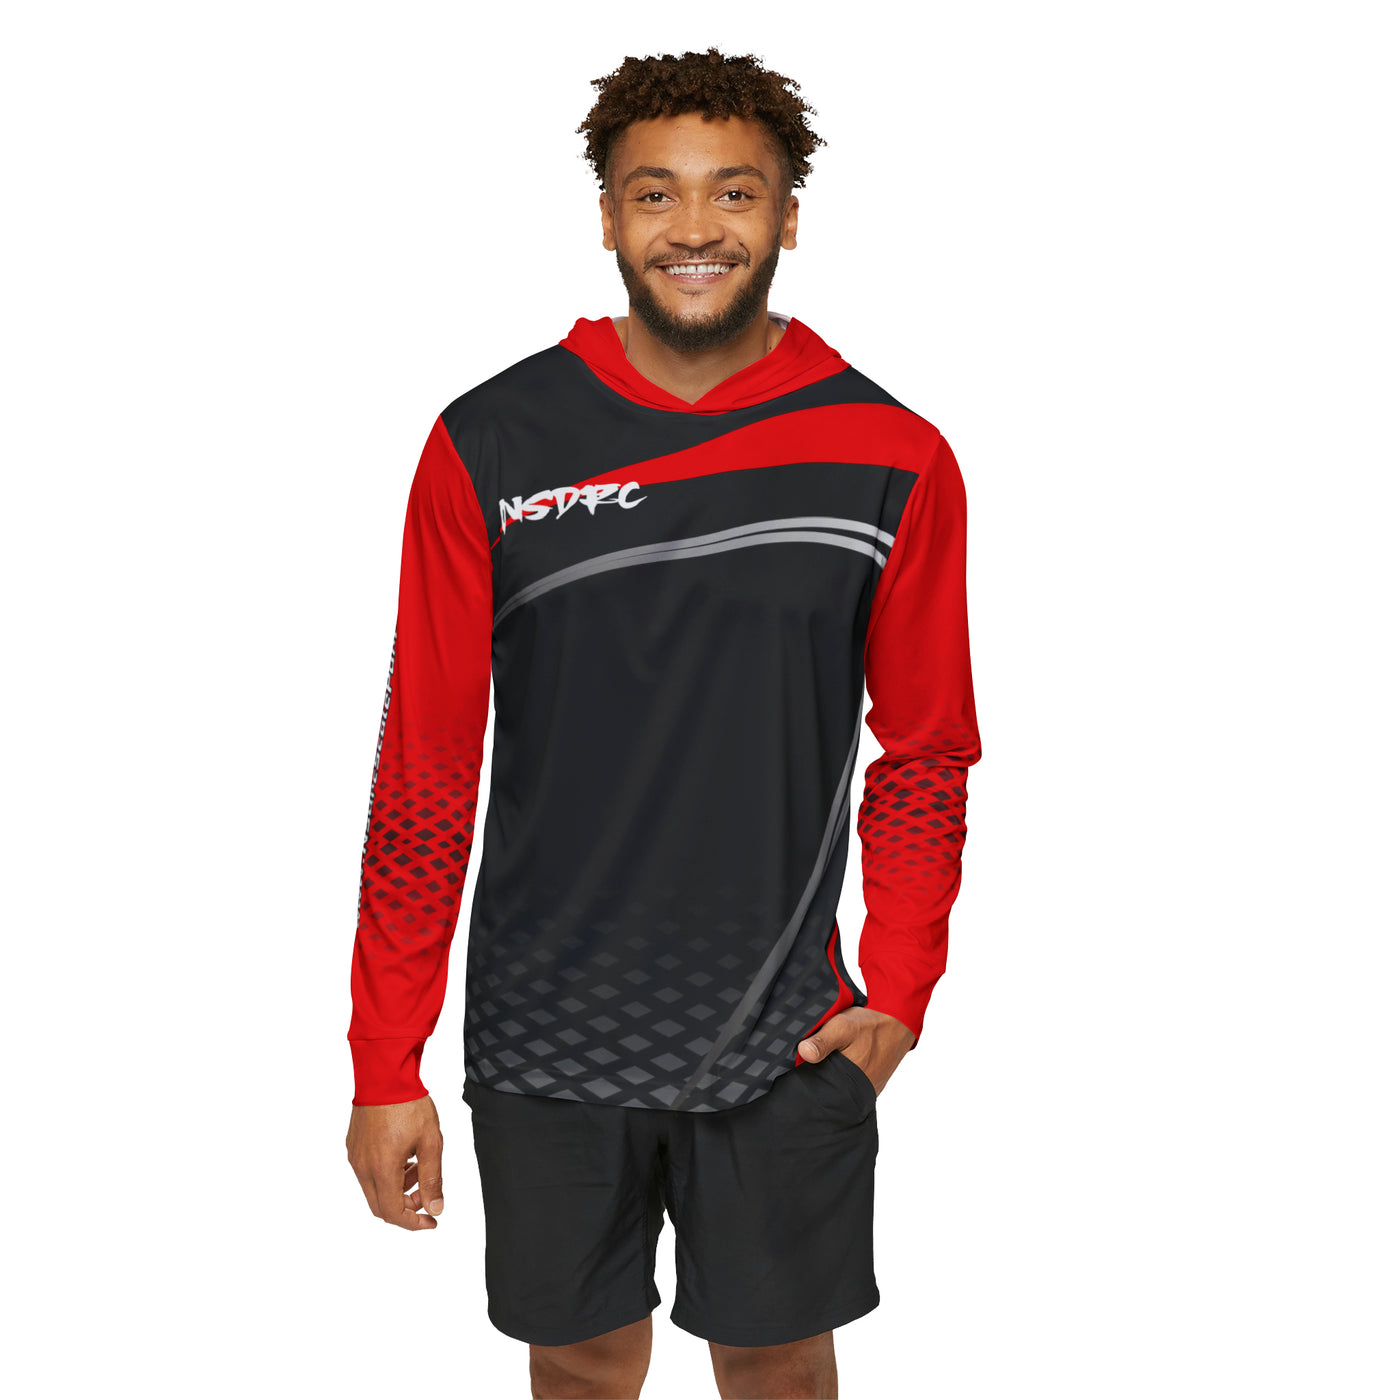 Men's Sports Warmup Hoodie Red Black Grey Pattern NSDRC Logo